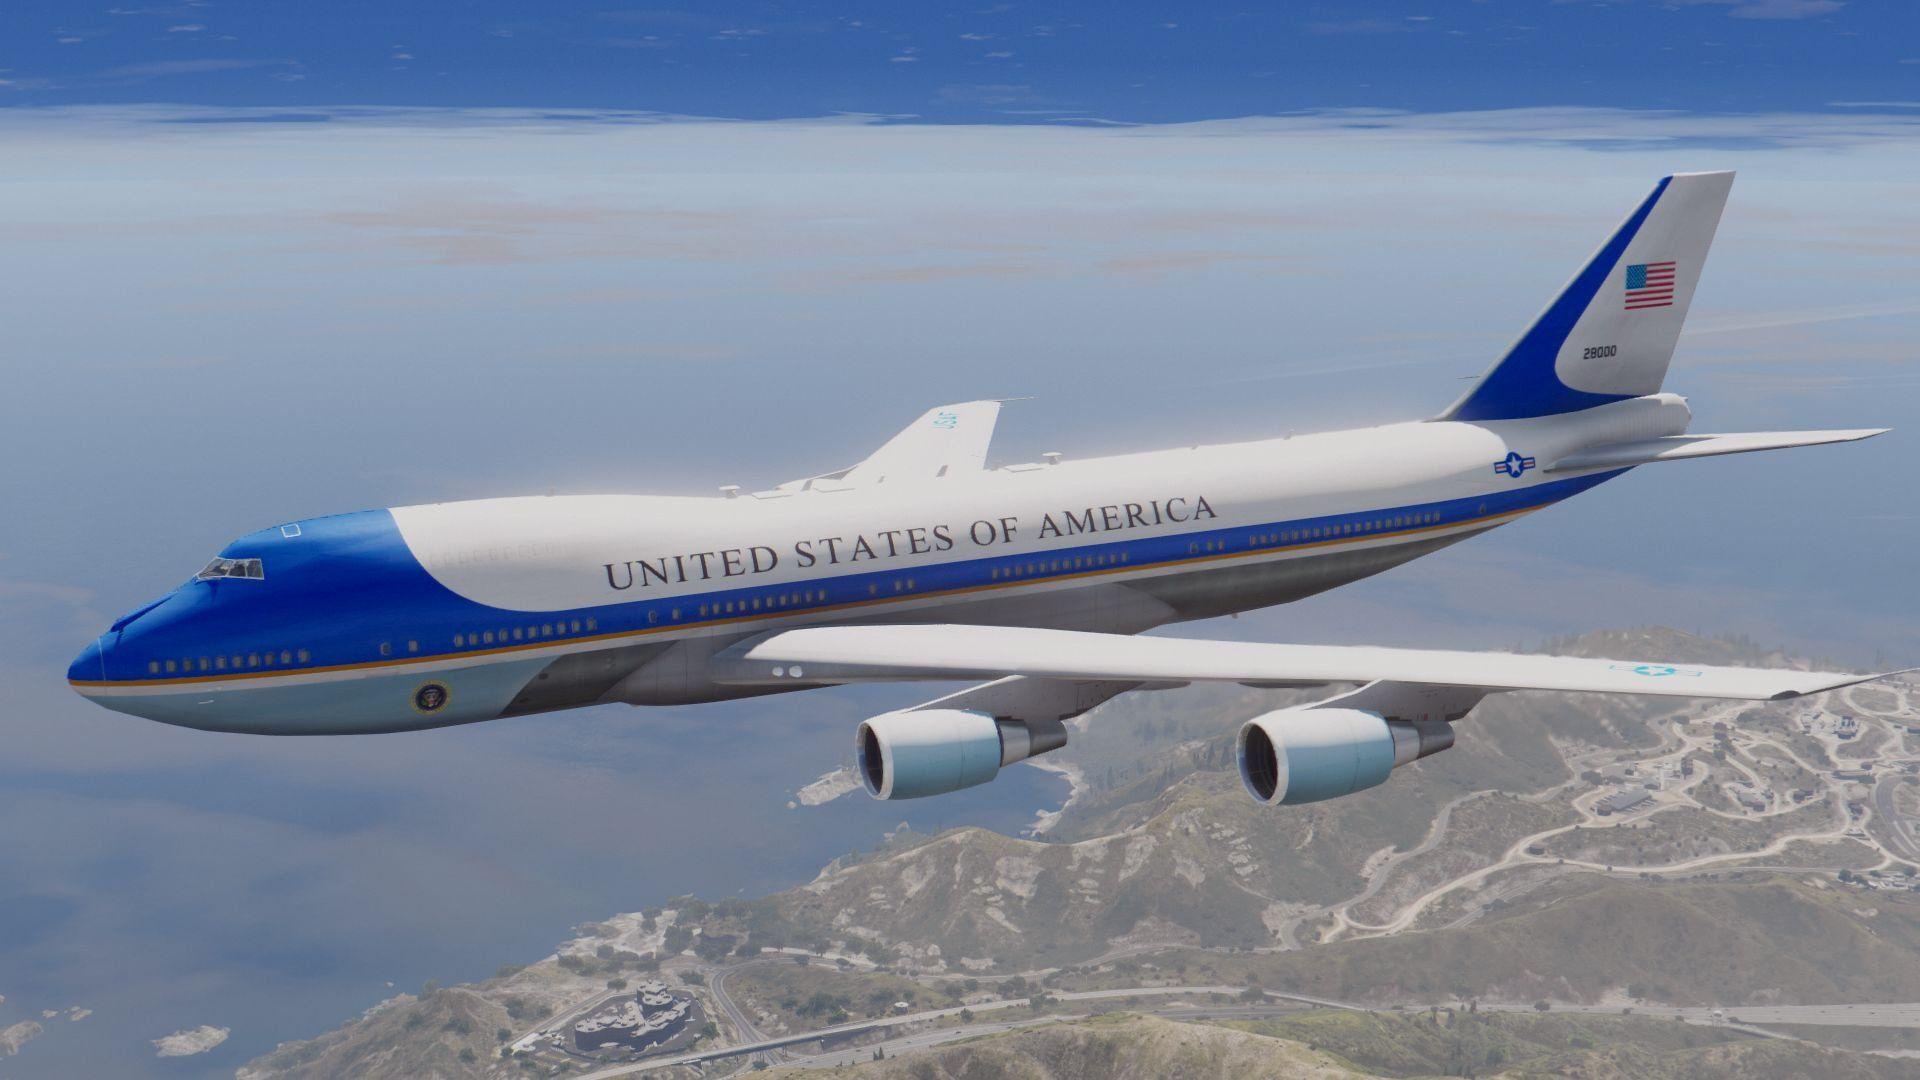 Вин самолет. 747 Air Force one. VC-25 «Air Force one». Boeing 747 Air Force one. Боинг 747 президента США.